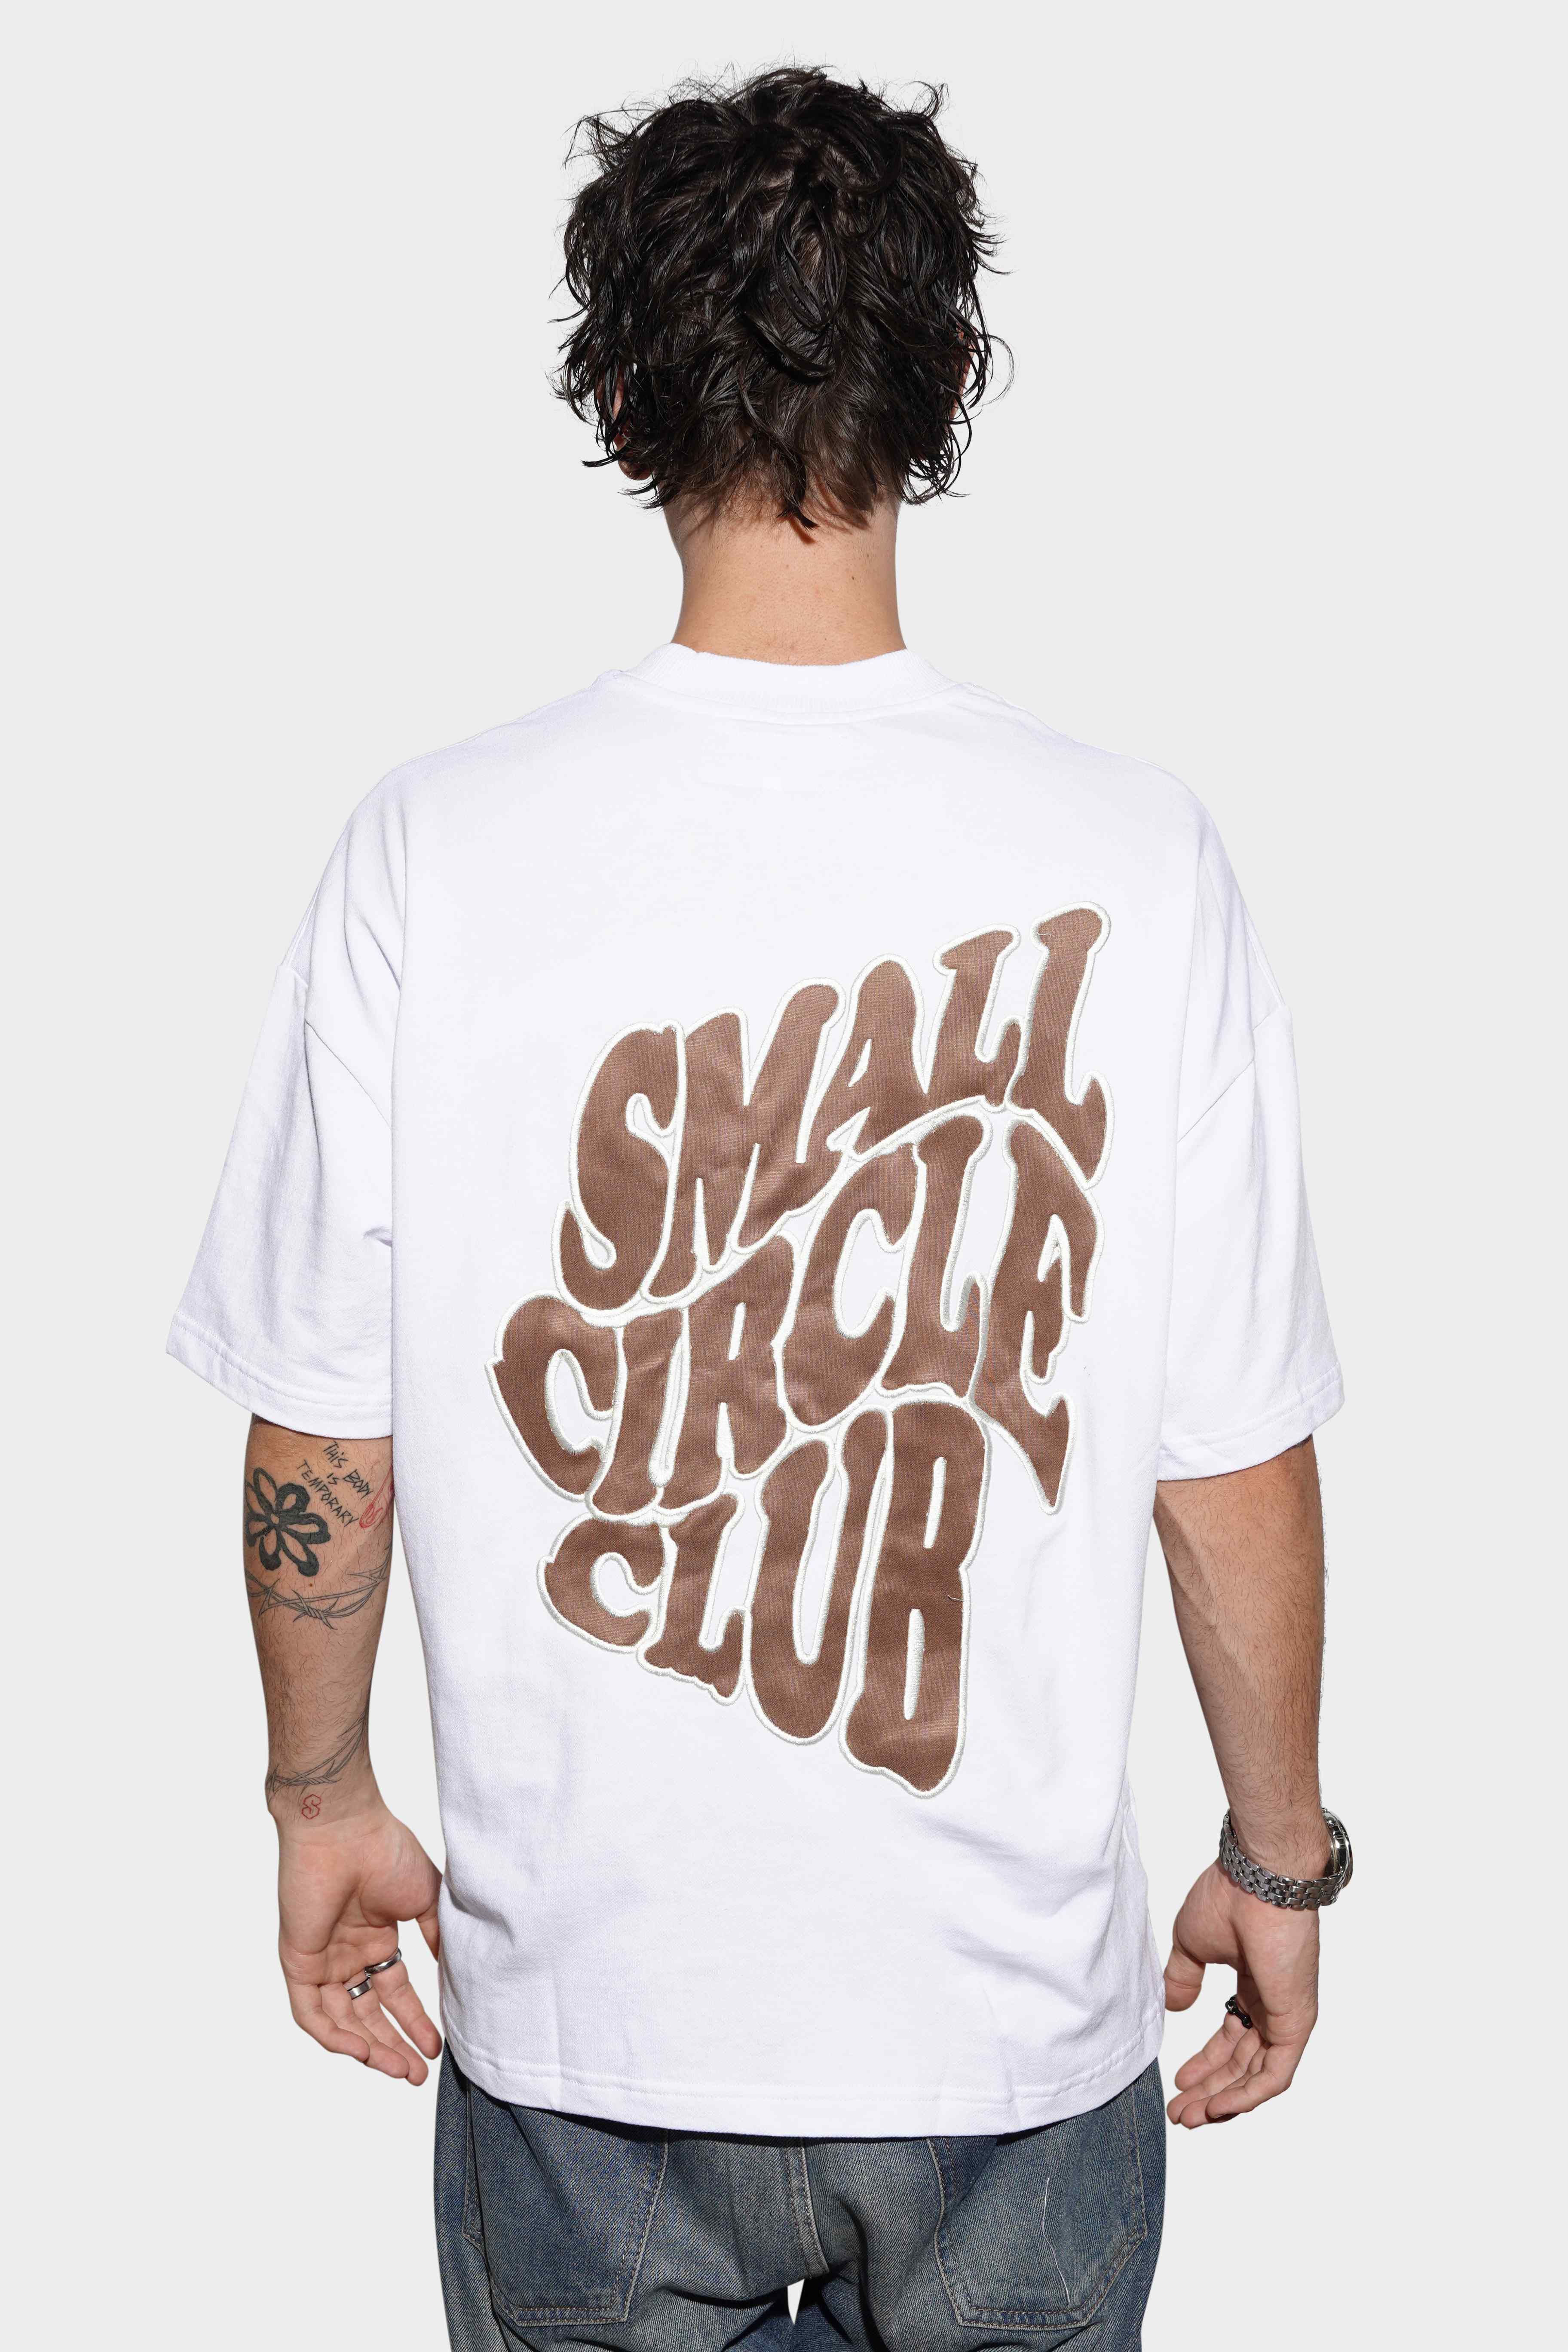 Sixth Avenue Small Circle Club V.2 Tee White/Tan